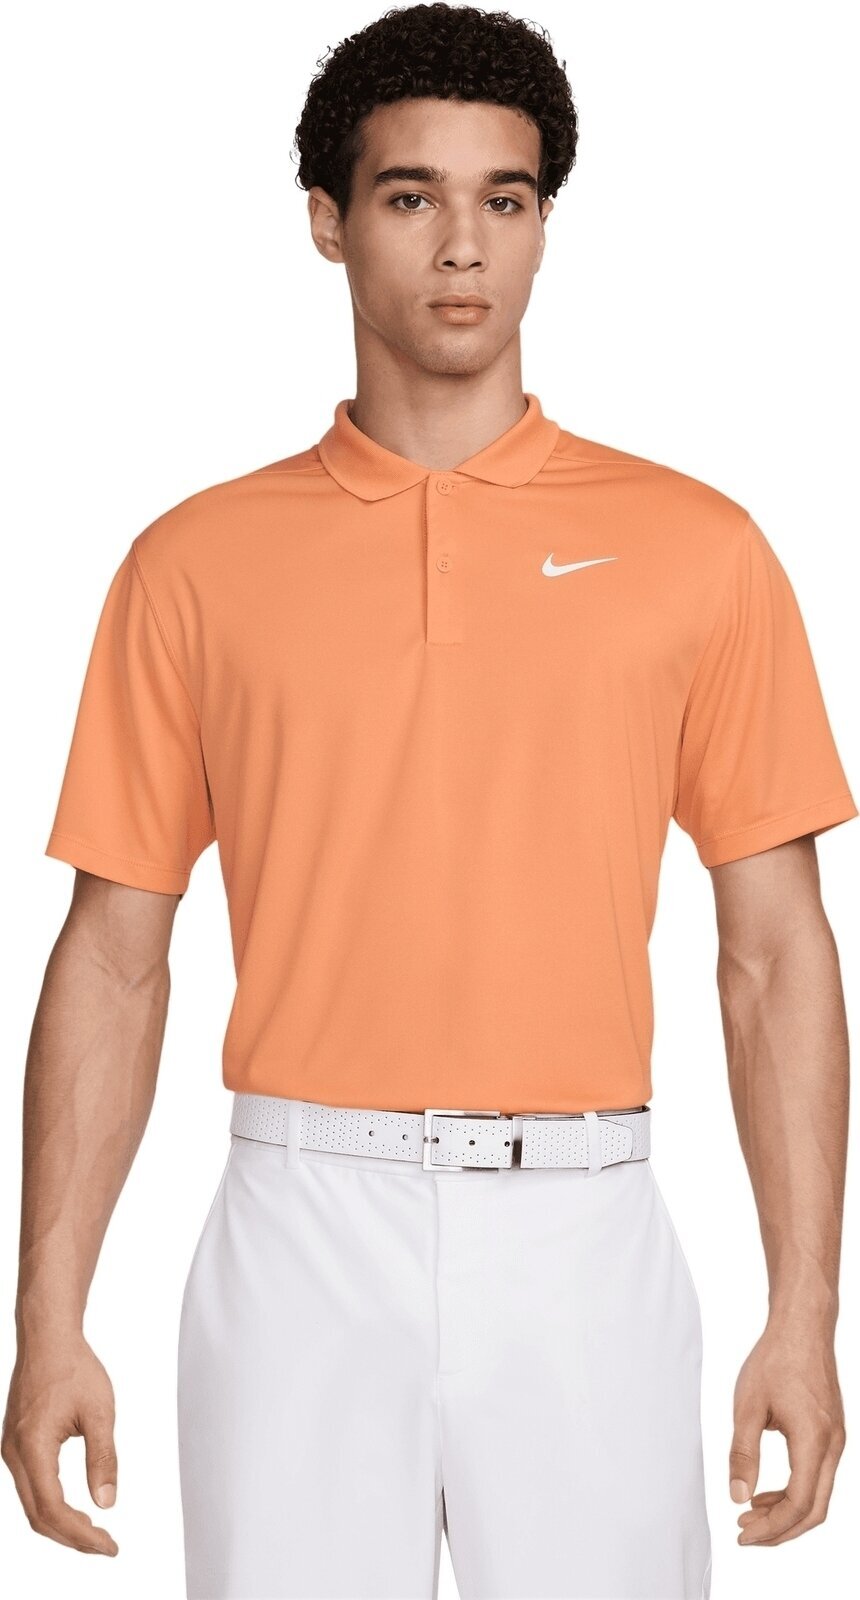 Camiseta polo Nike Dri-Fit Victory Solid Mens Polo Orange Trance/White S Camiseta polo